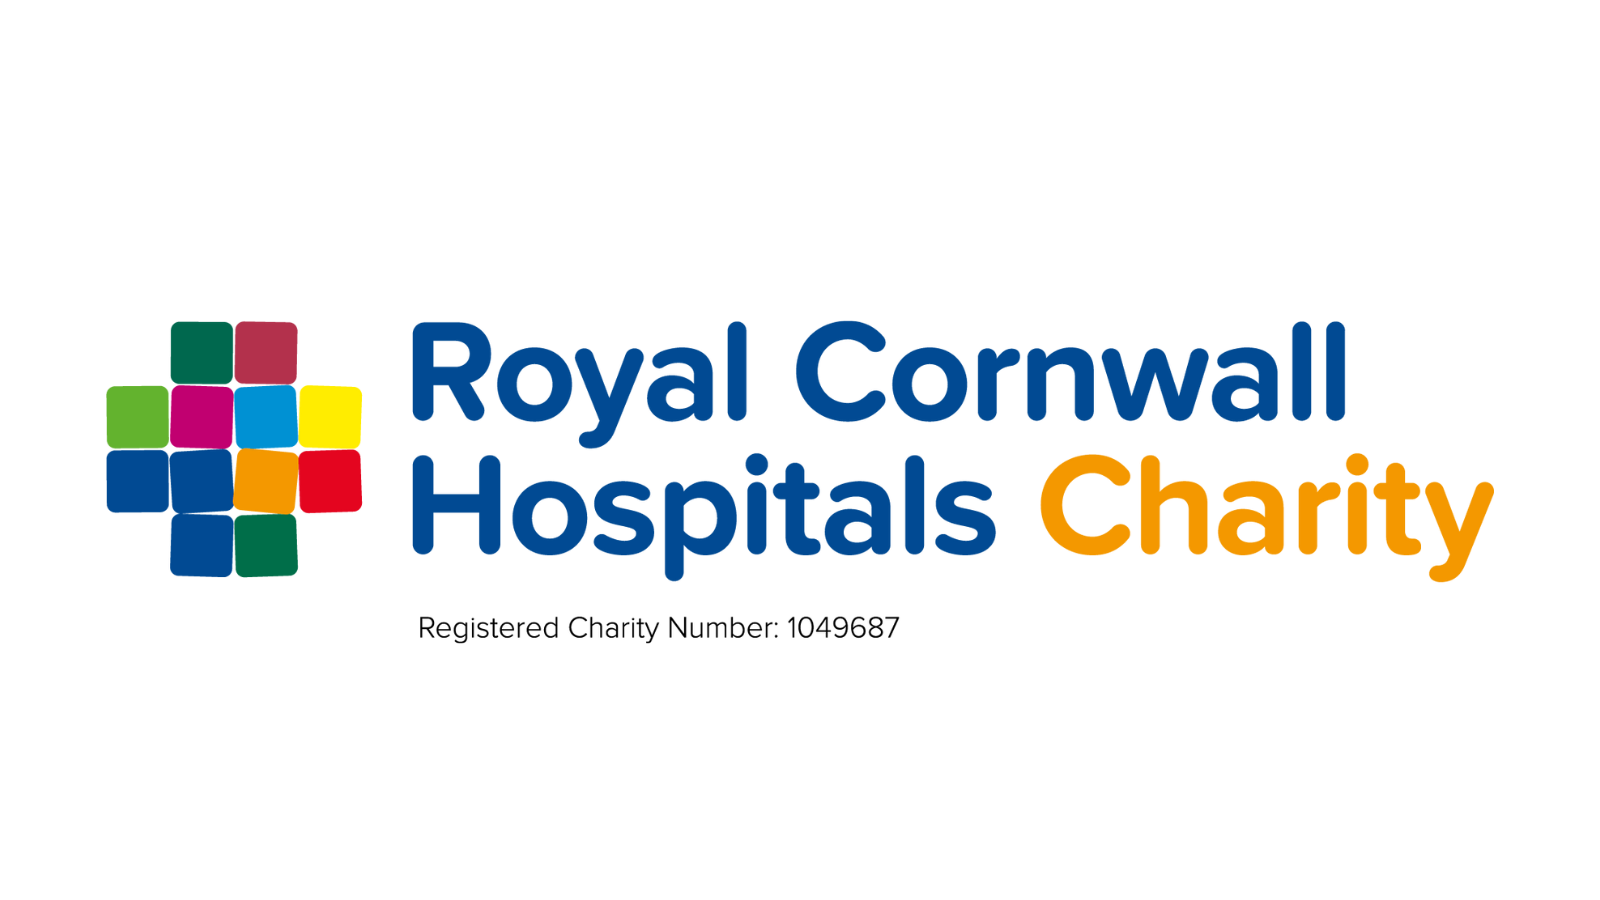 Royal Cornwall Hospital Charity logo.